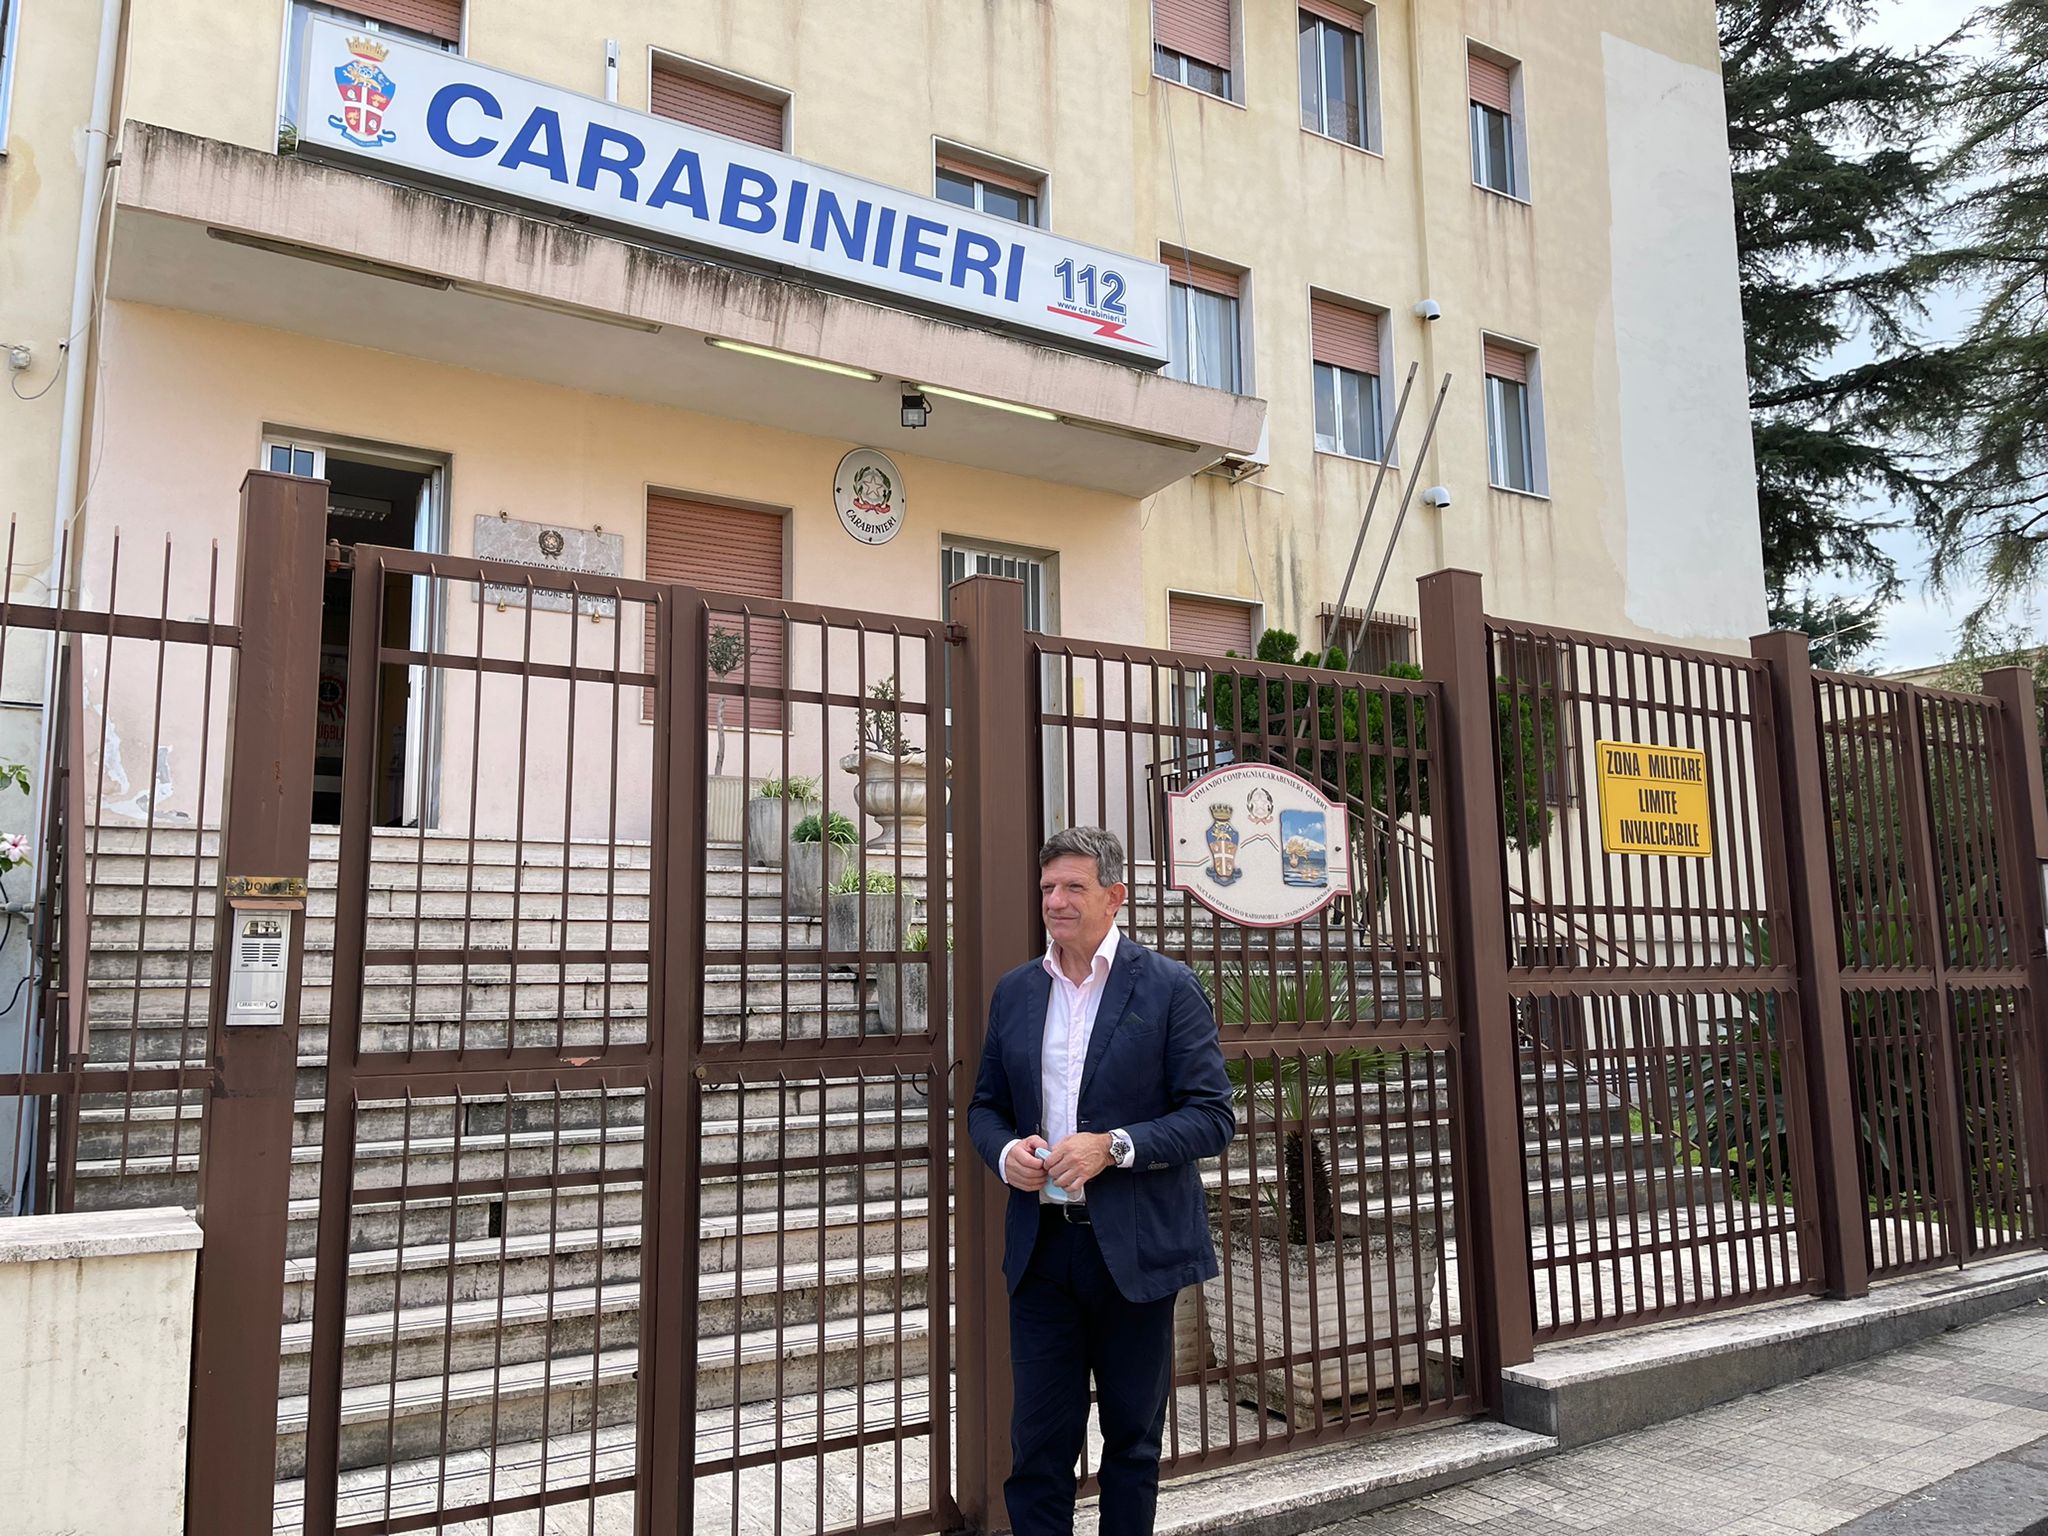 Giarre, percorso di legalità del neo sindaco Cantarella. Vertice sulla sicurezza con i Cc